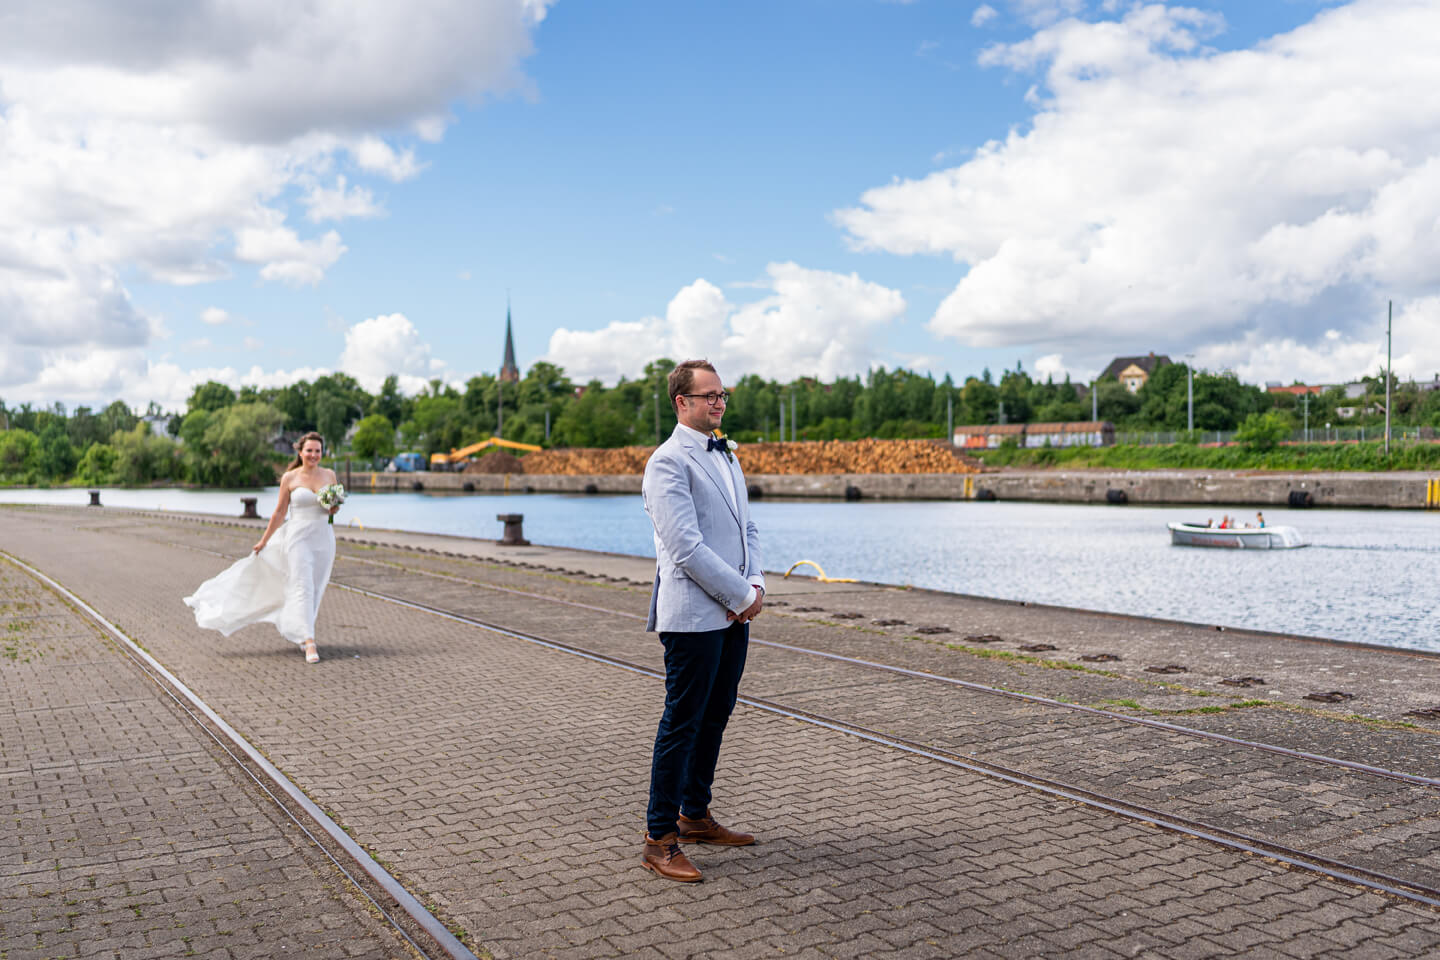 Hochzeitsshooting bei den media docks in Lübeck. Gleich treffen Braut und Bräutigam erstmals aufeinander.